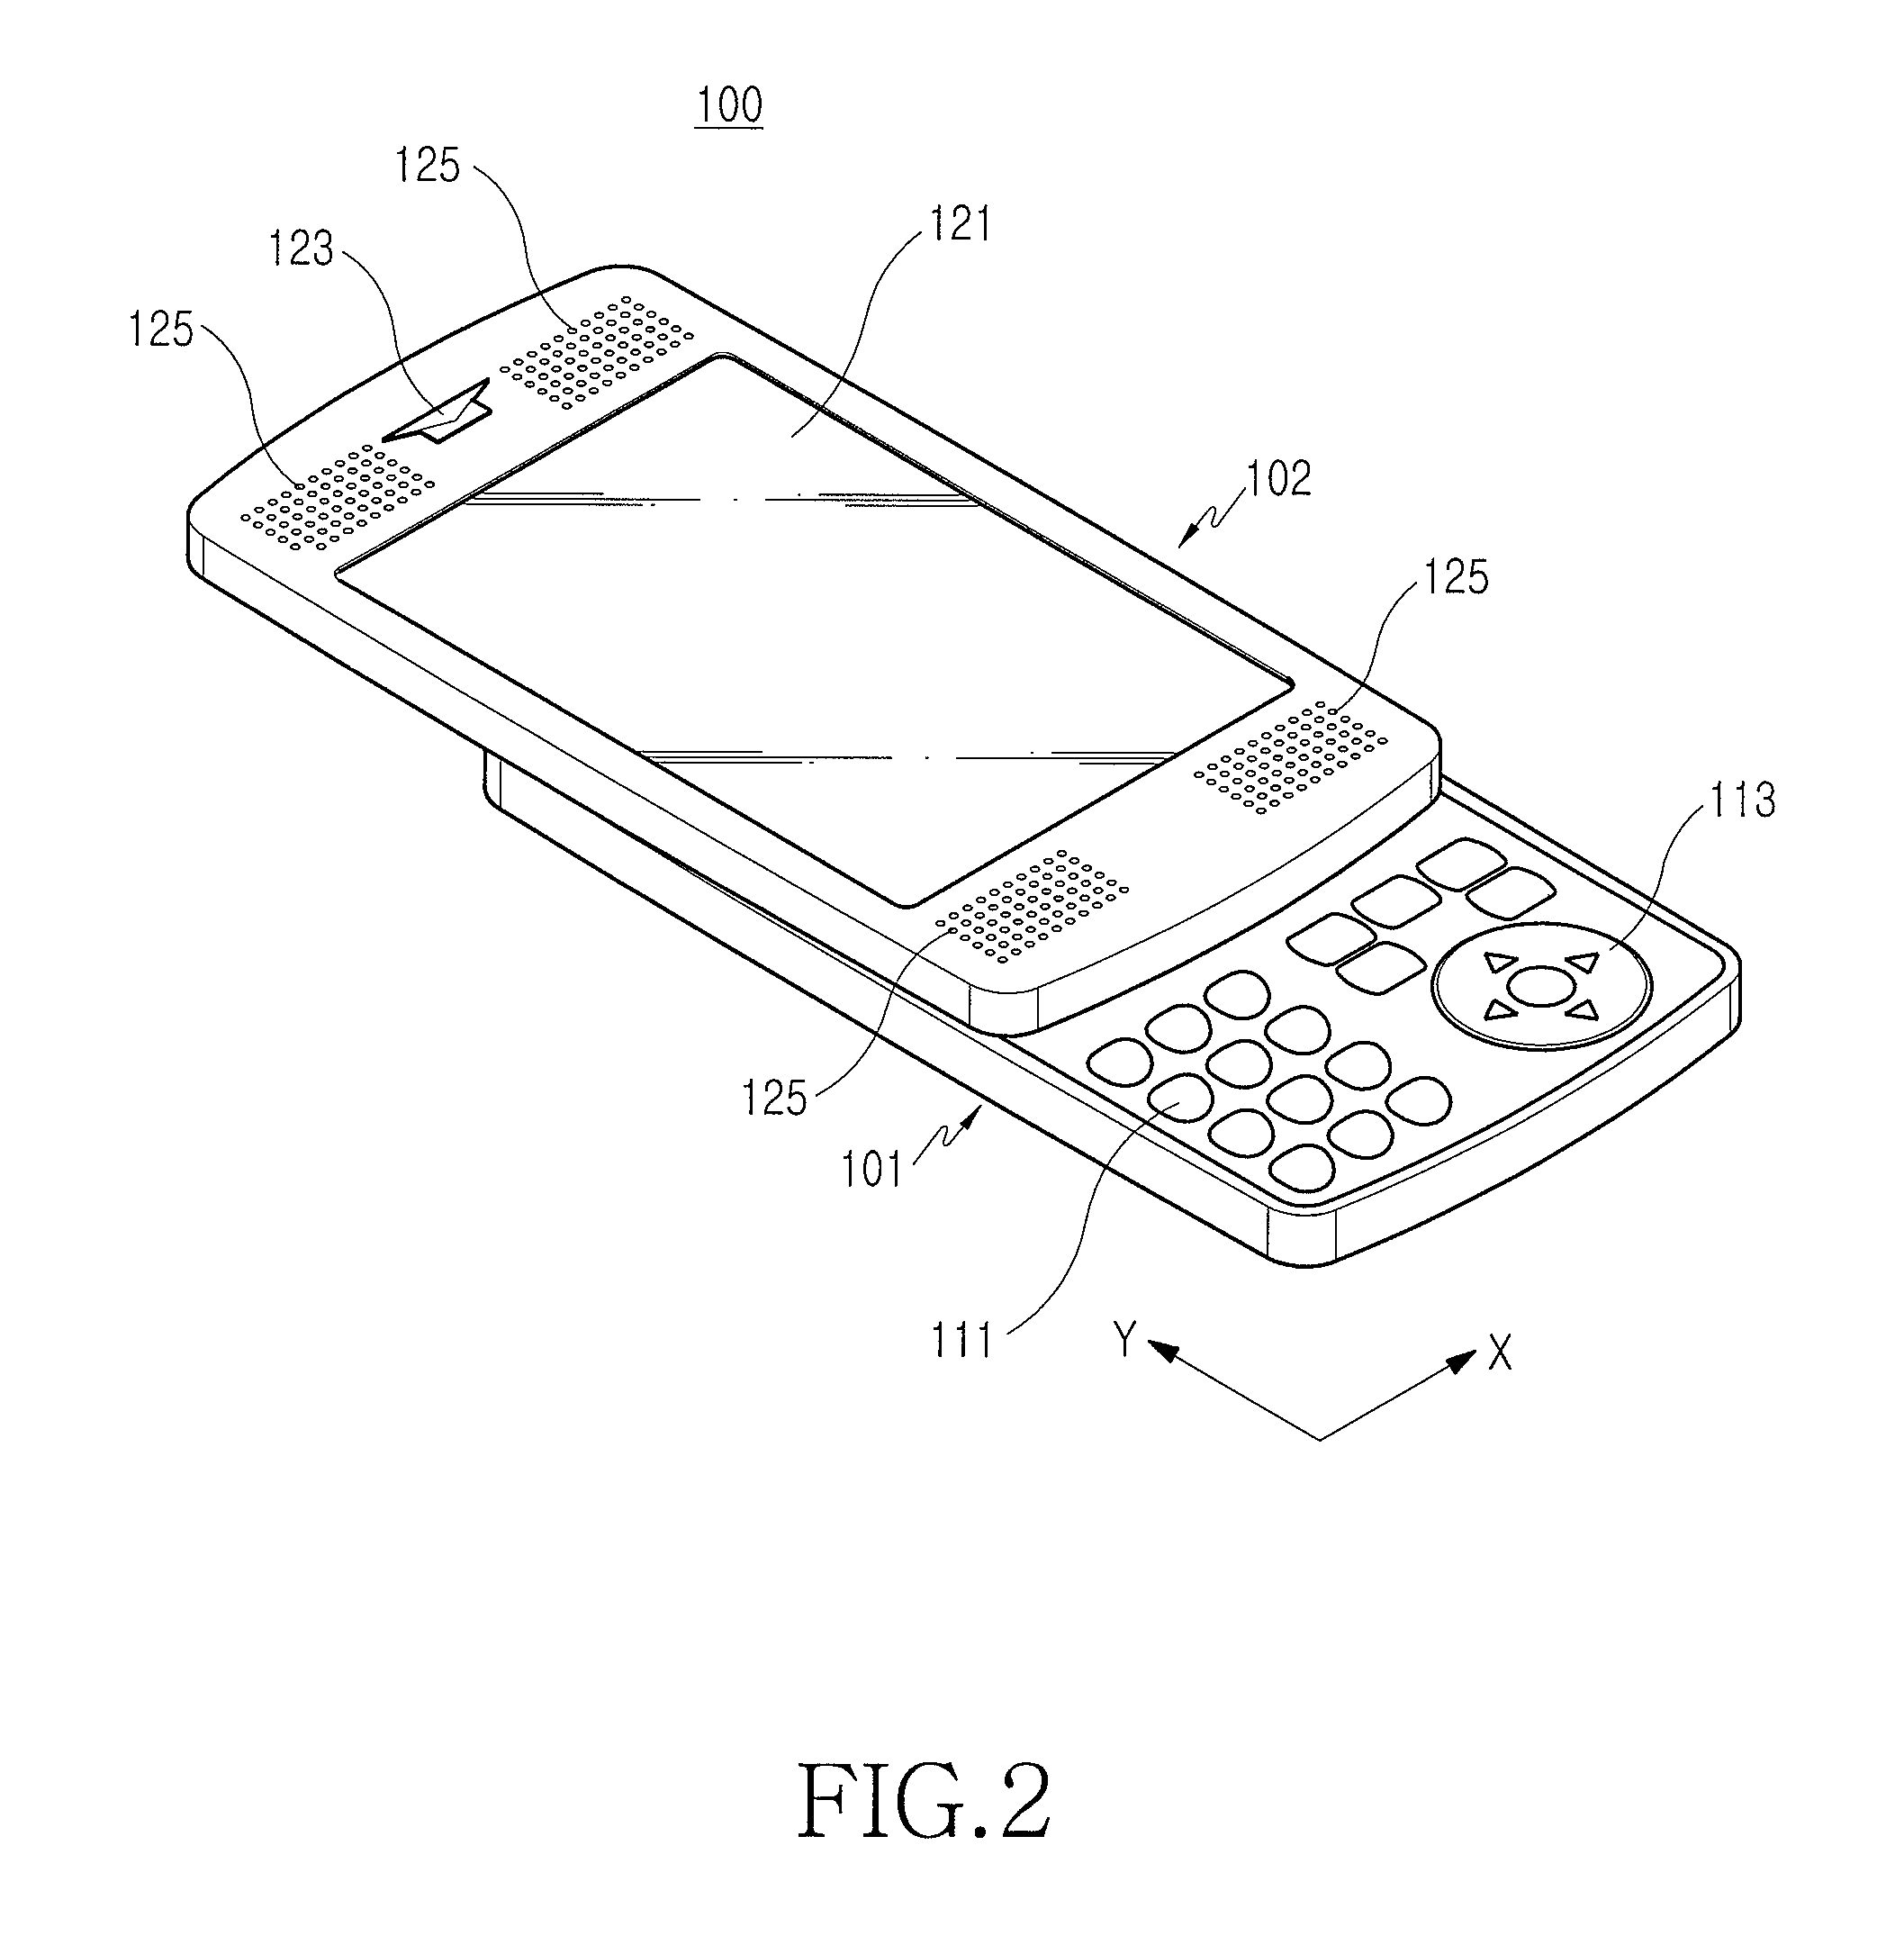 Sliding-type portable terminal